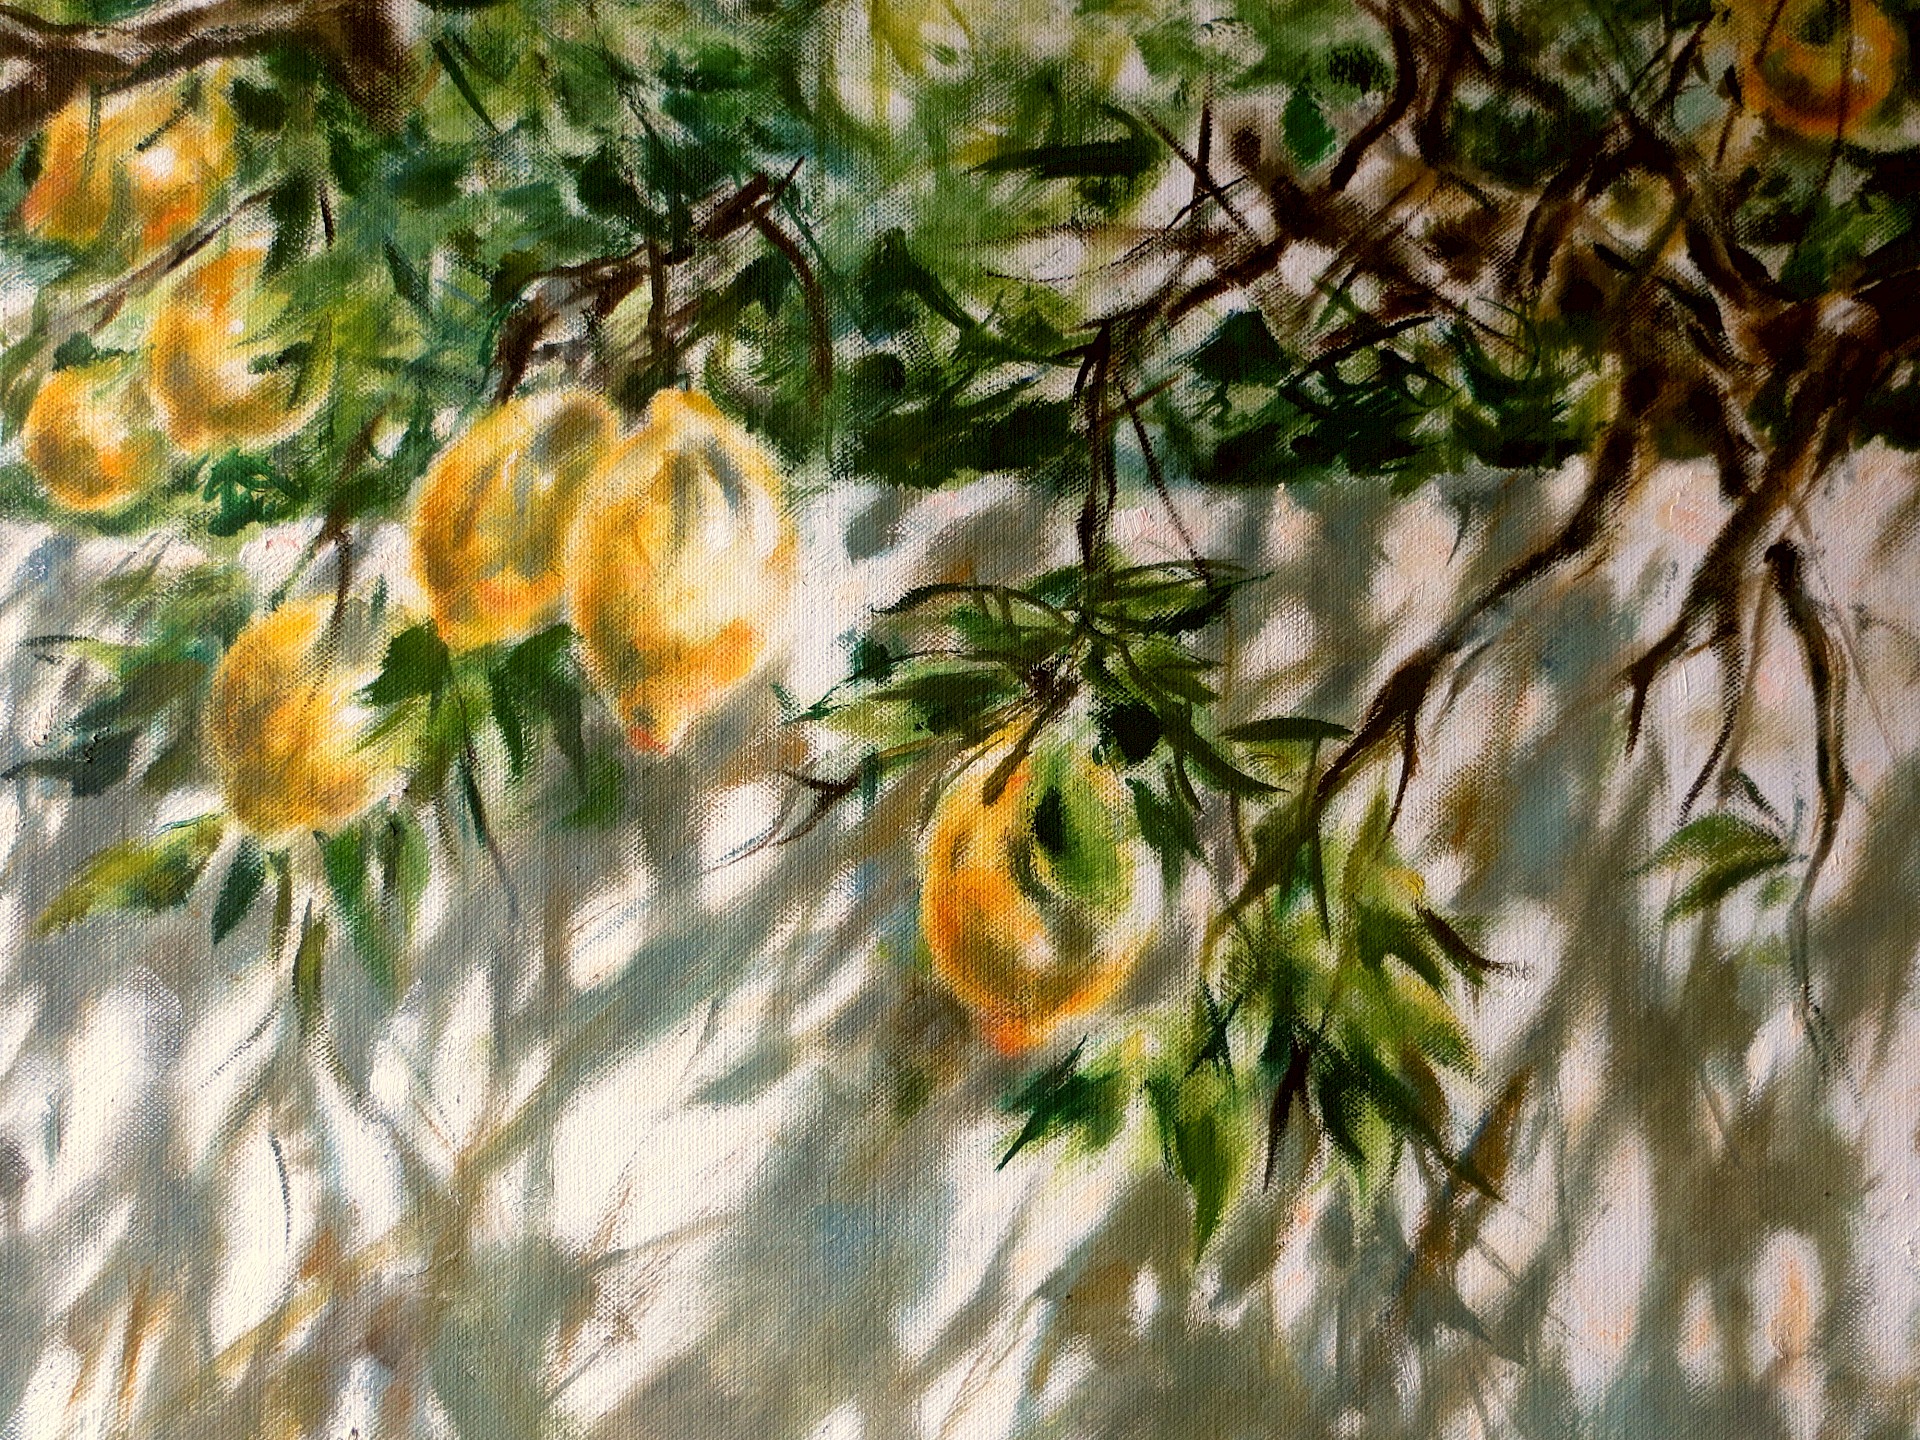 Zitronenmauer, 130 x 230 cm, Öl /Lw., 2014 (Ausschnitt)